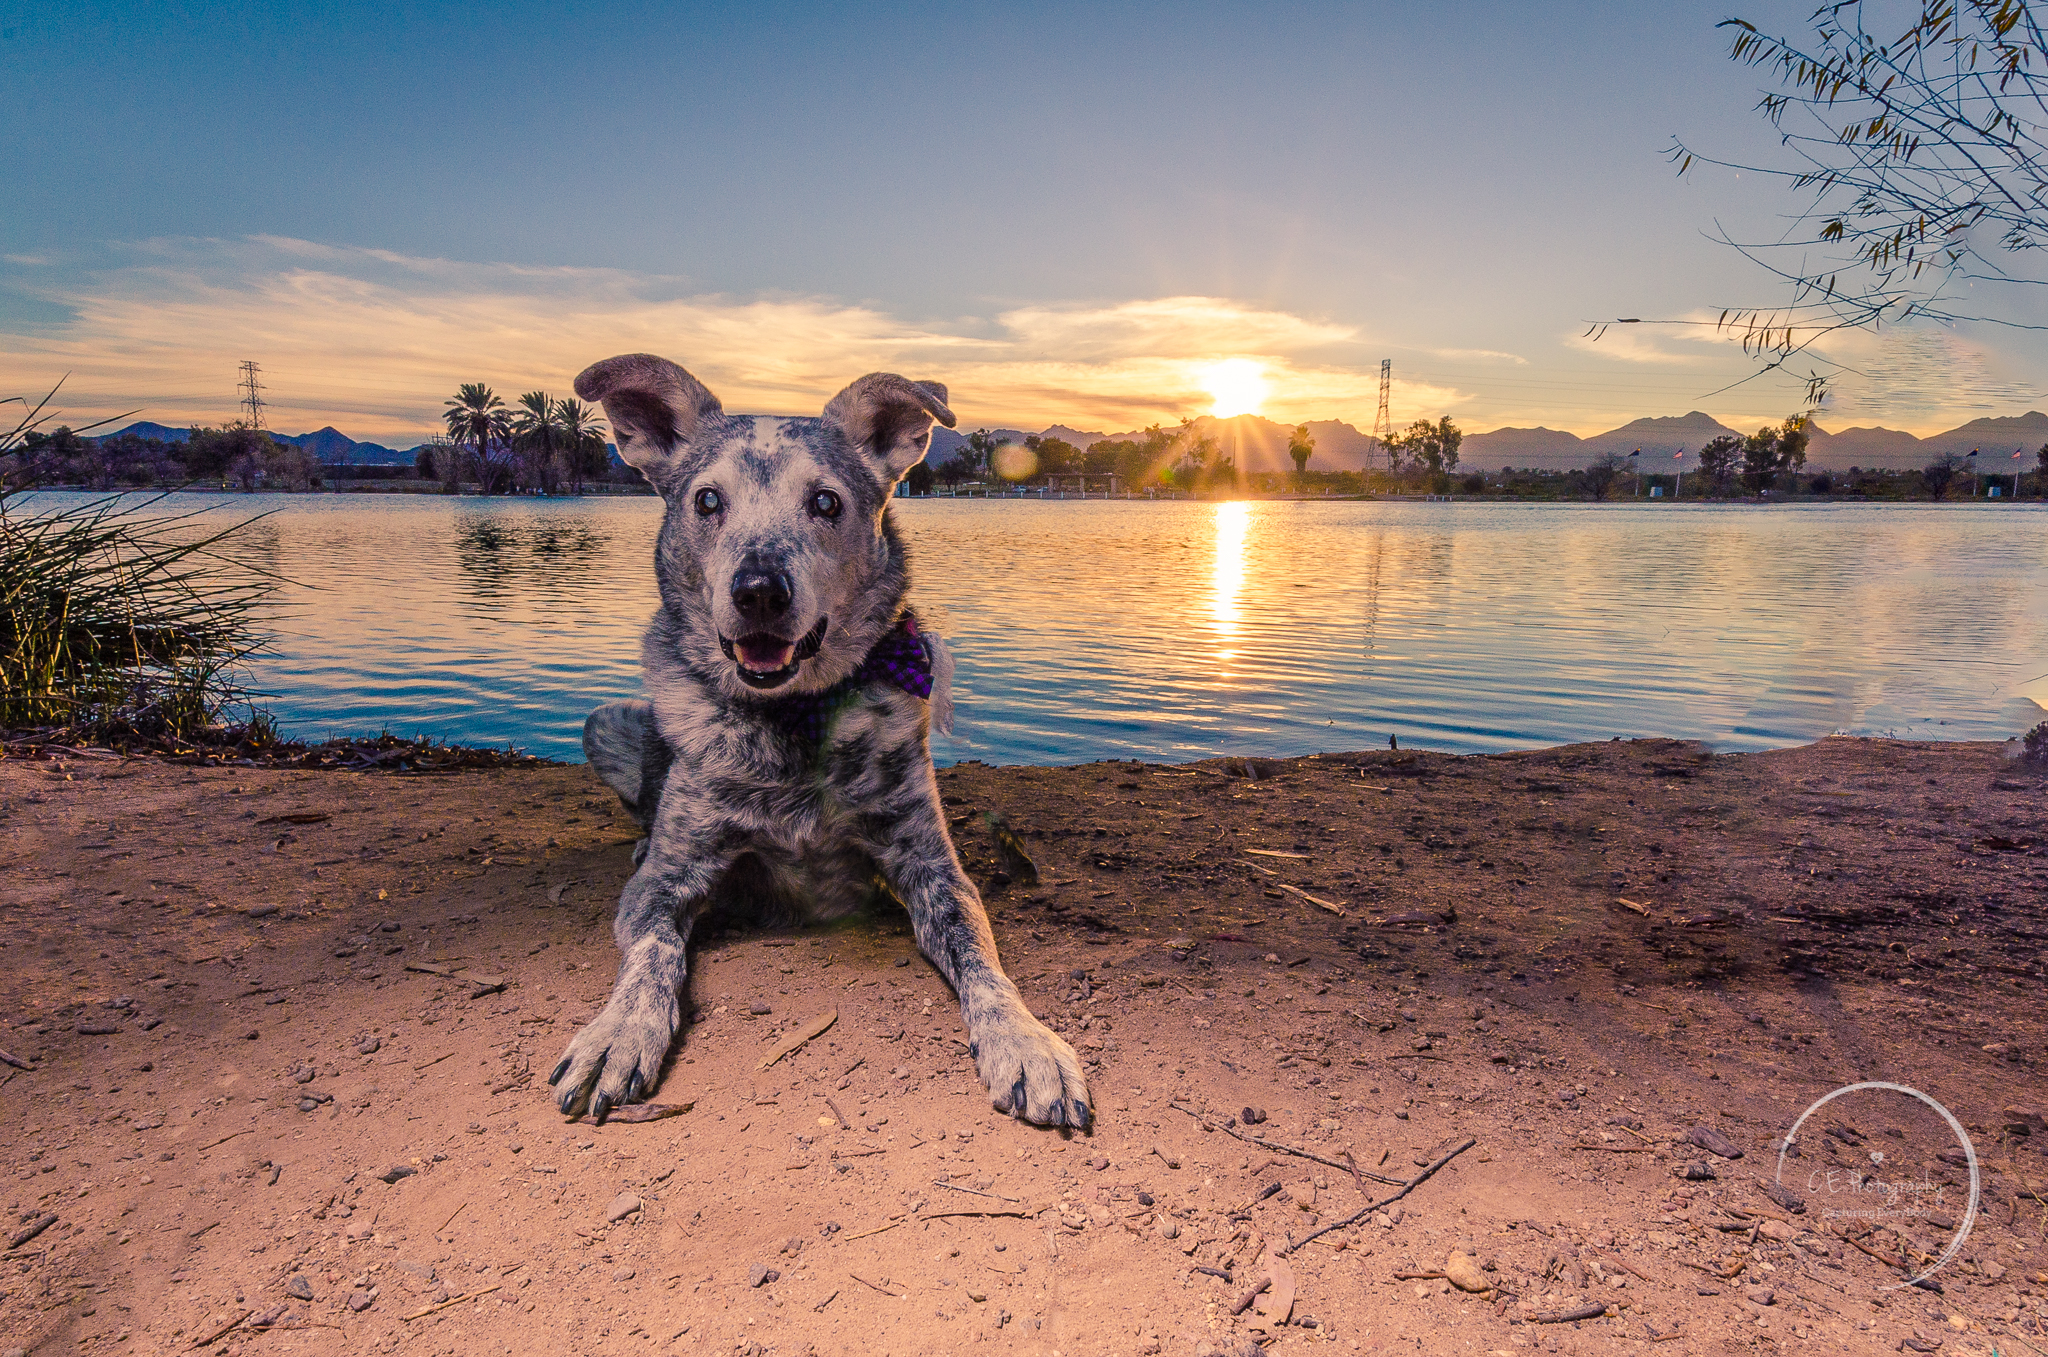 Buddy the dog at the lake